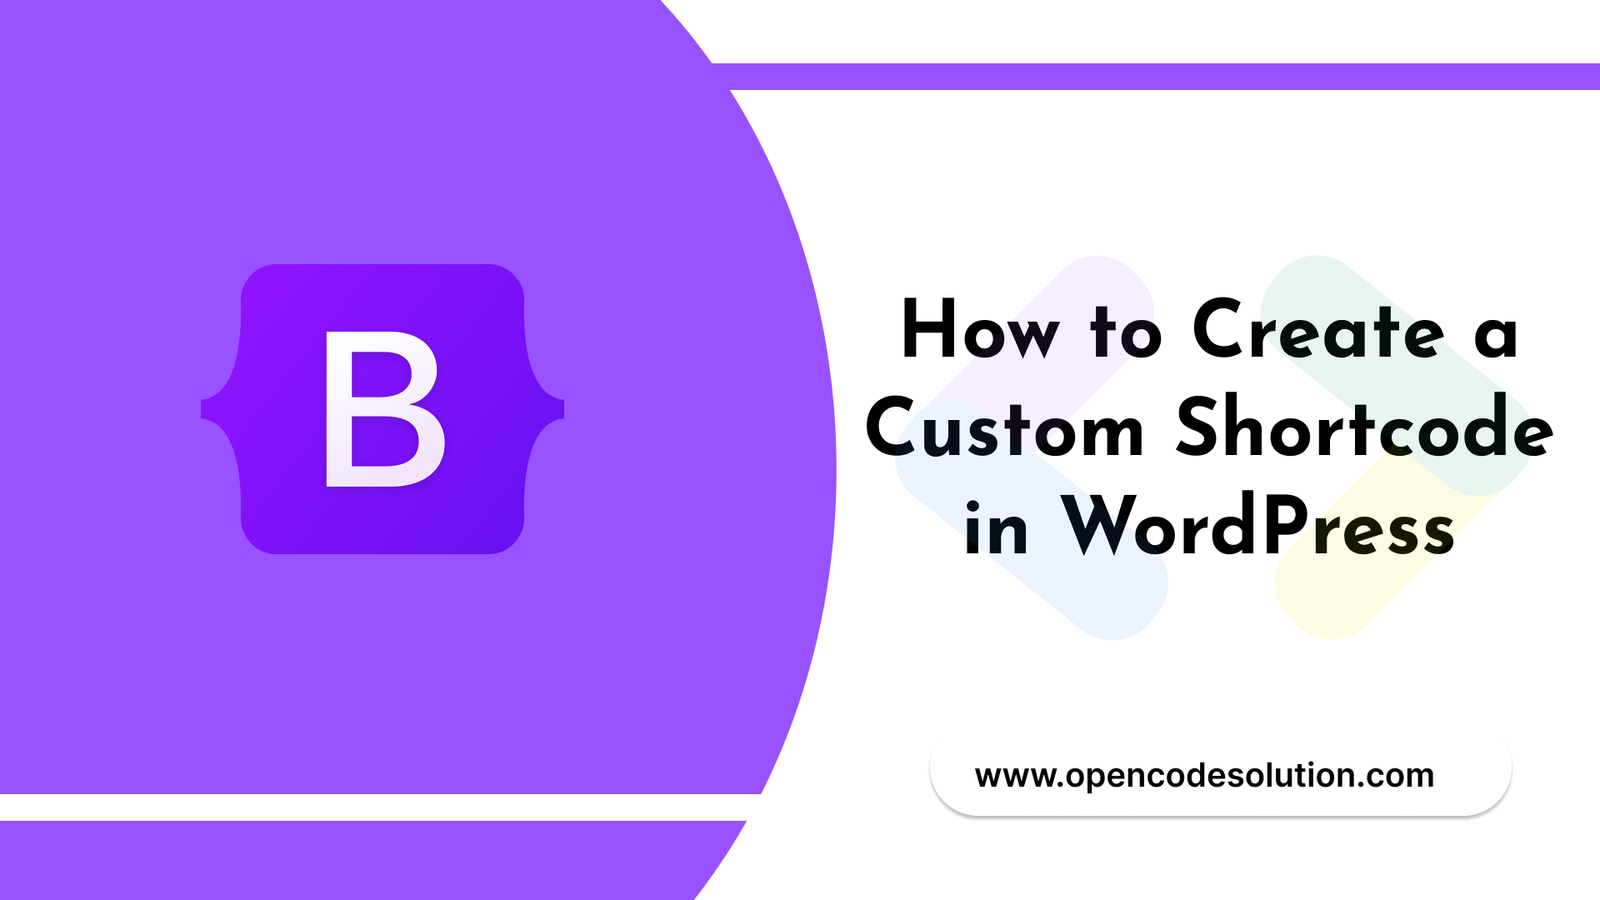 How to Create a Custom Shortcode in WordPress